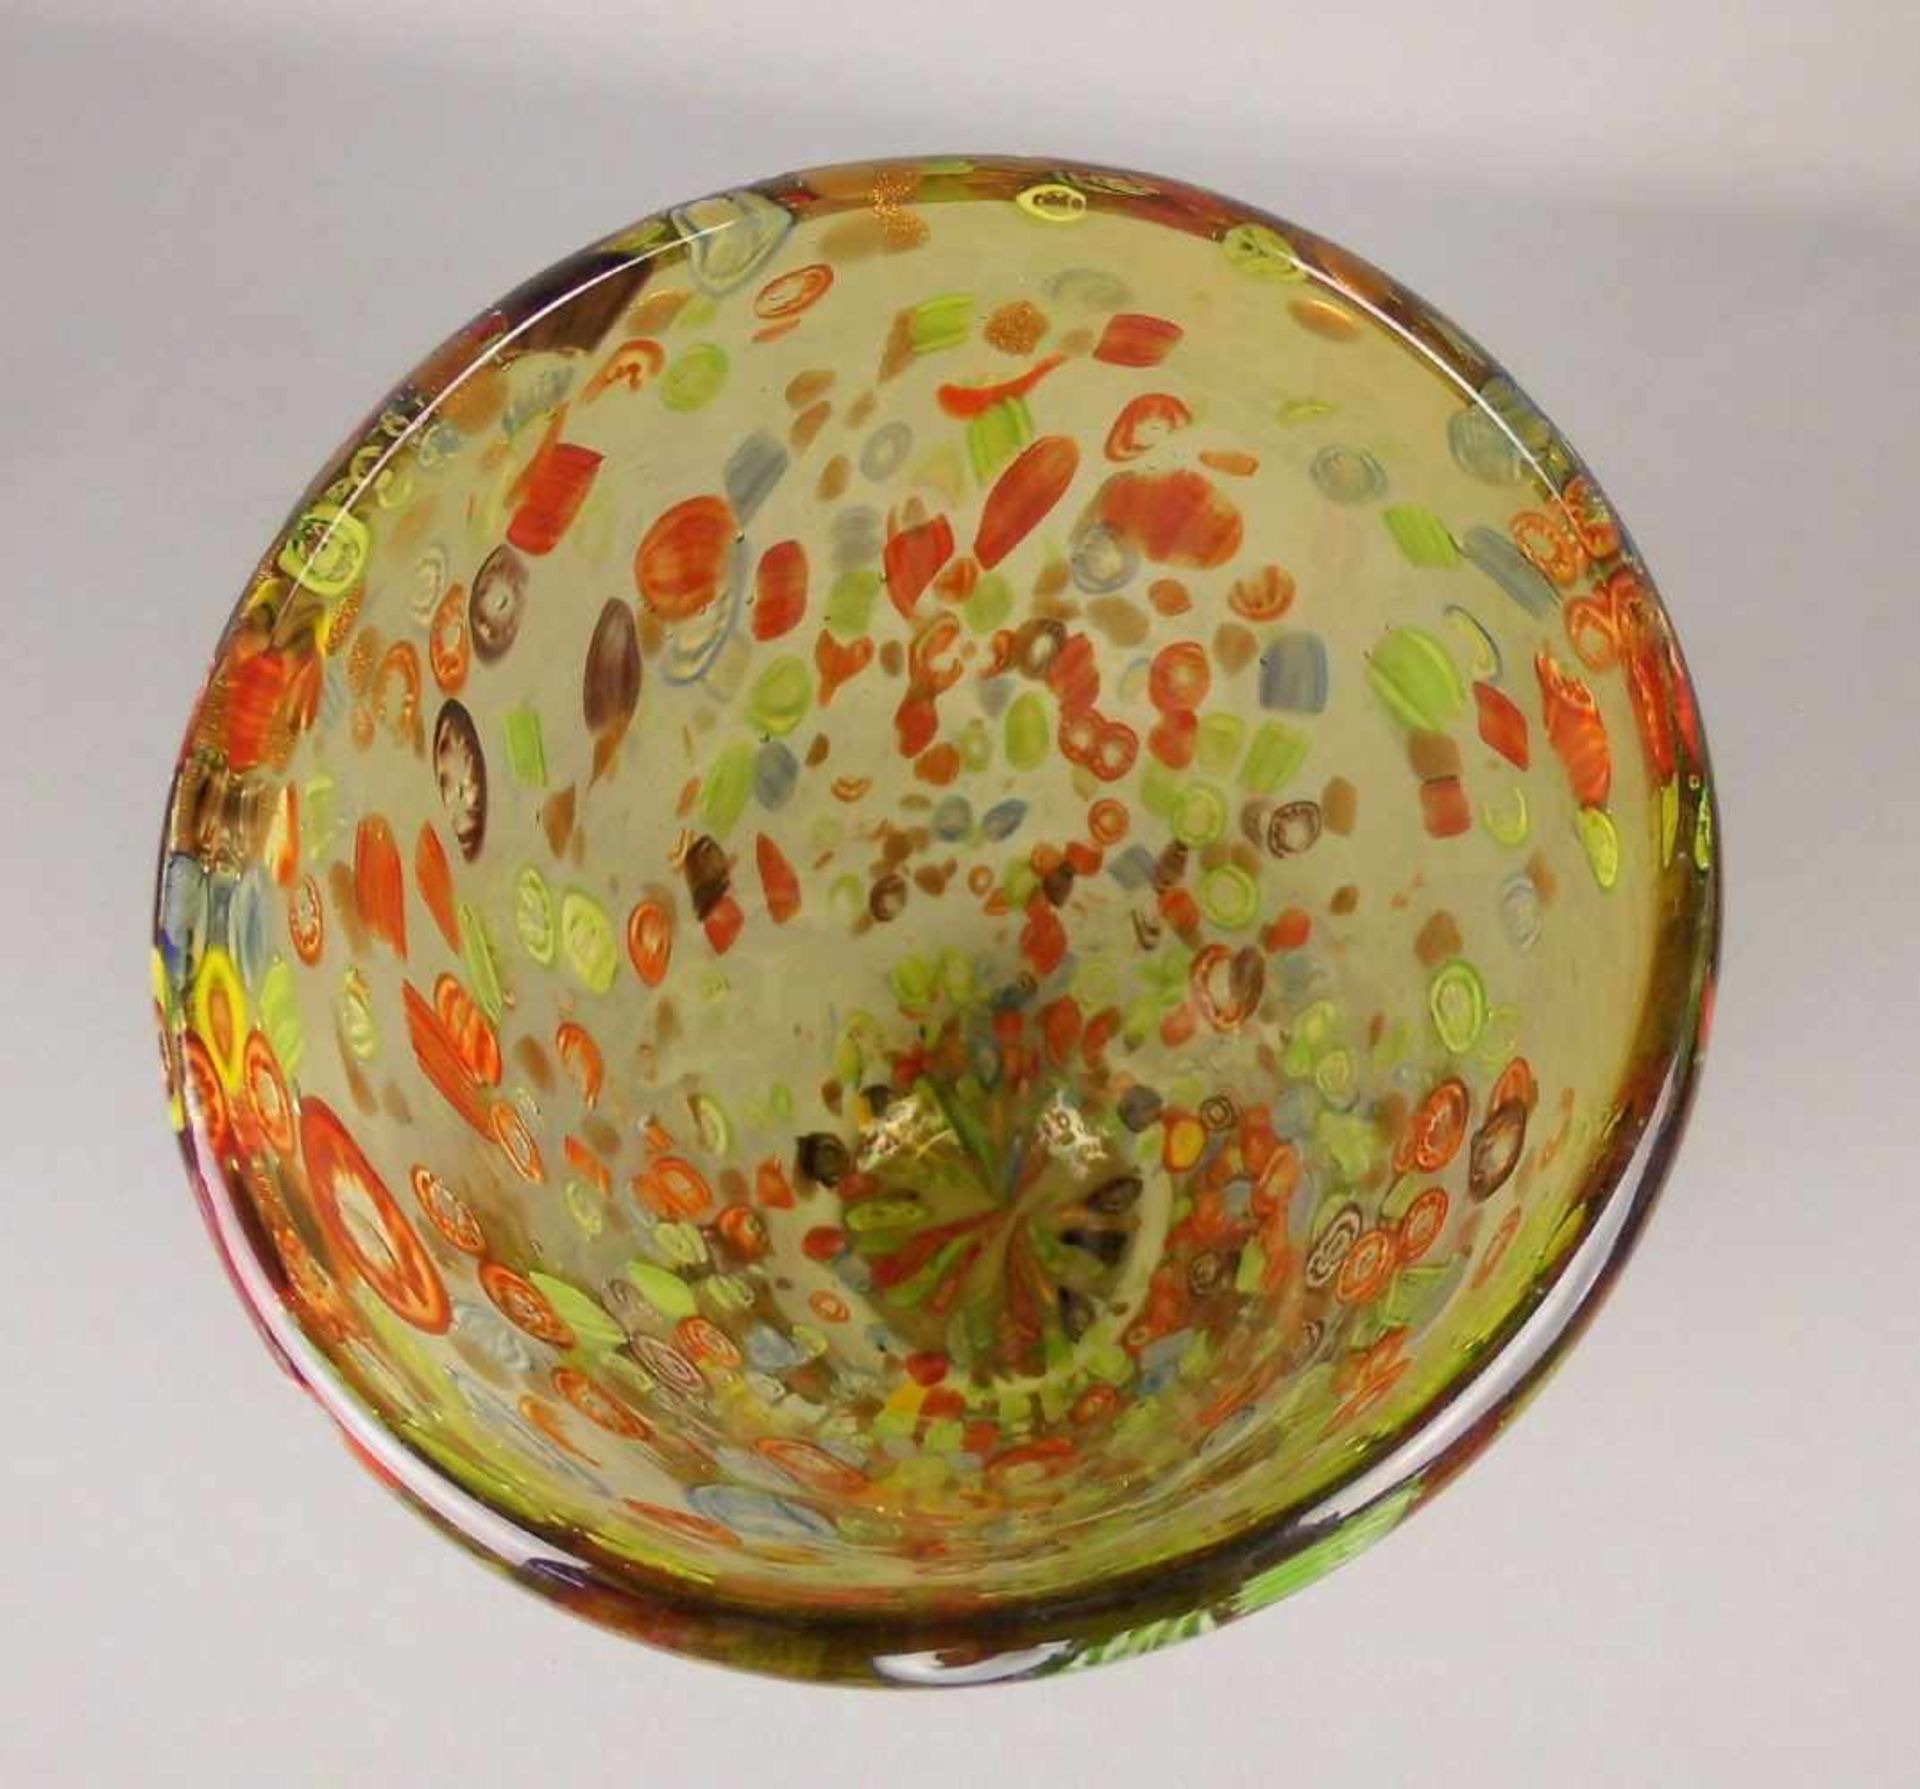 MURANO GLASVASE "MILLE FIORI", grünliches Glas mit Blaseneinschlüssen, eingeschmolzenen - Image 4 of 5